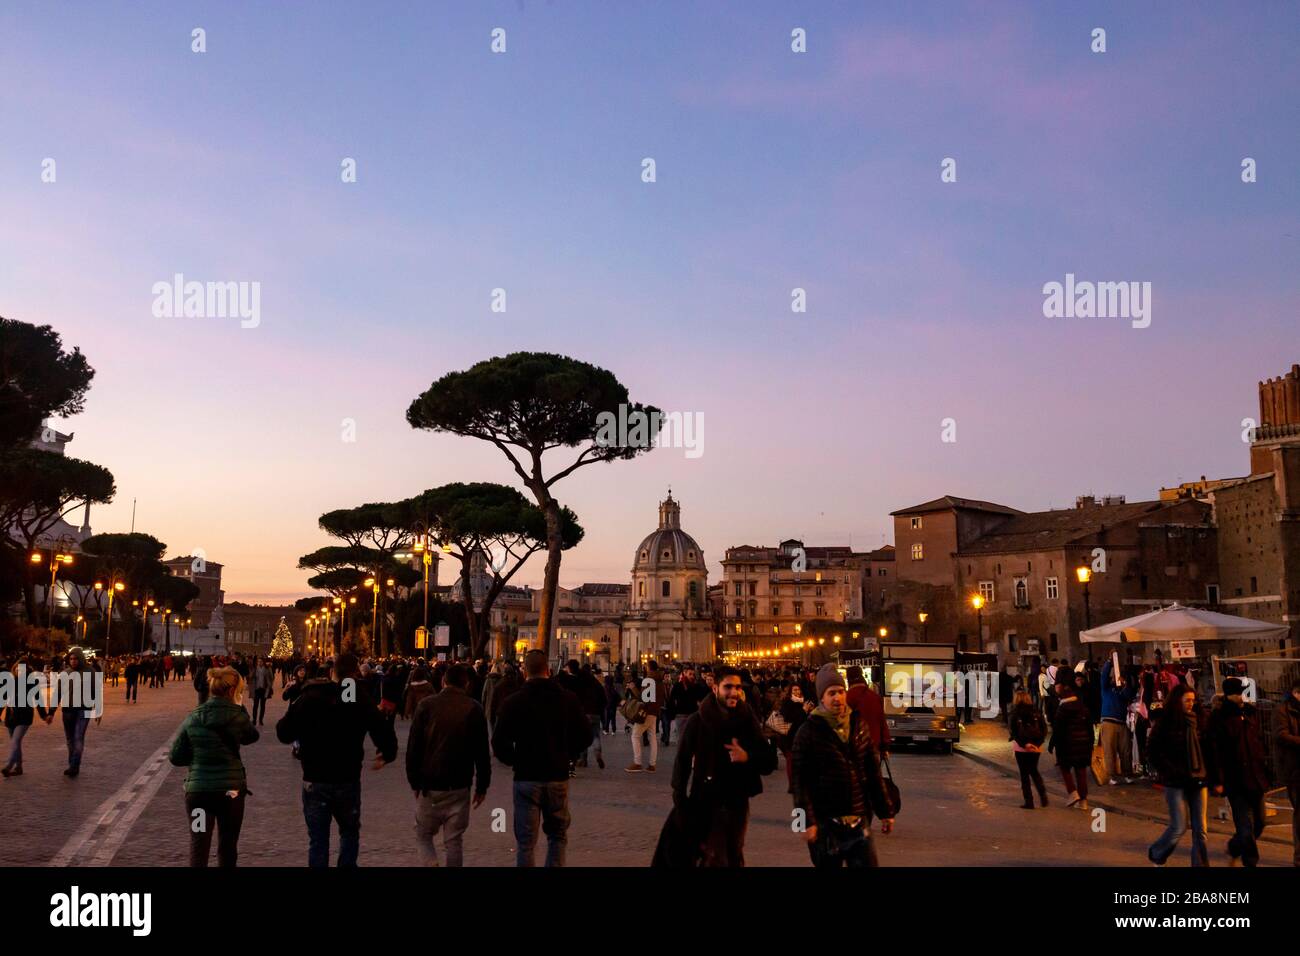 Les touristes visitant les sites touristiques de Rome la nuit Banque D'Images